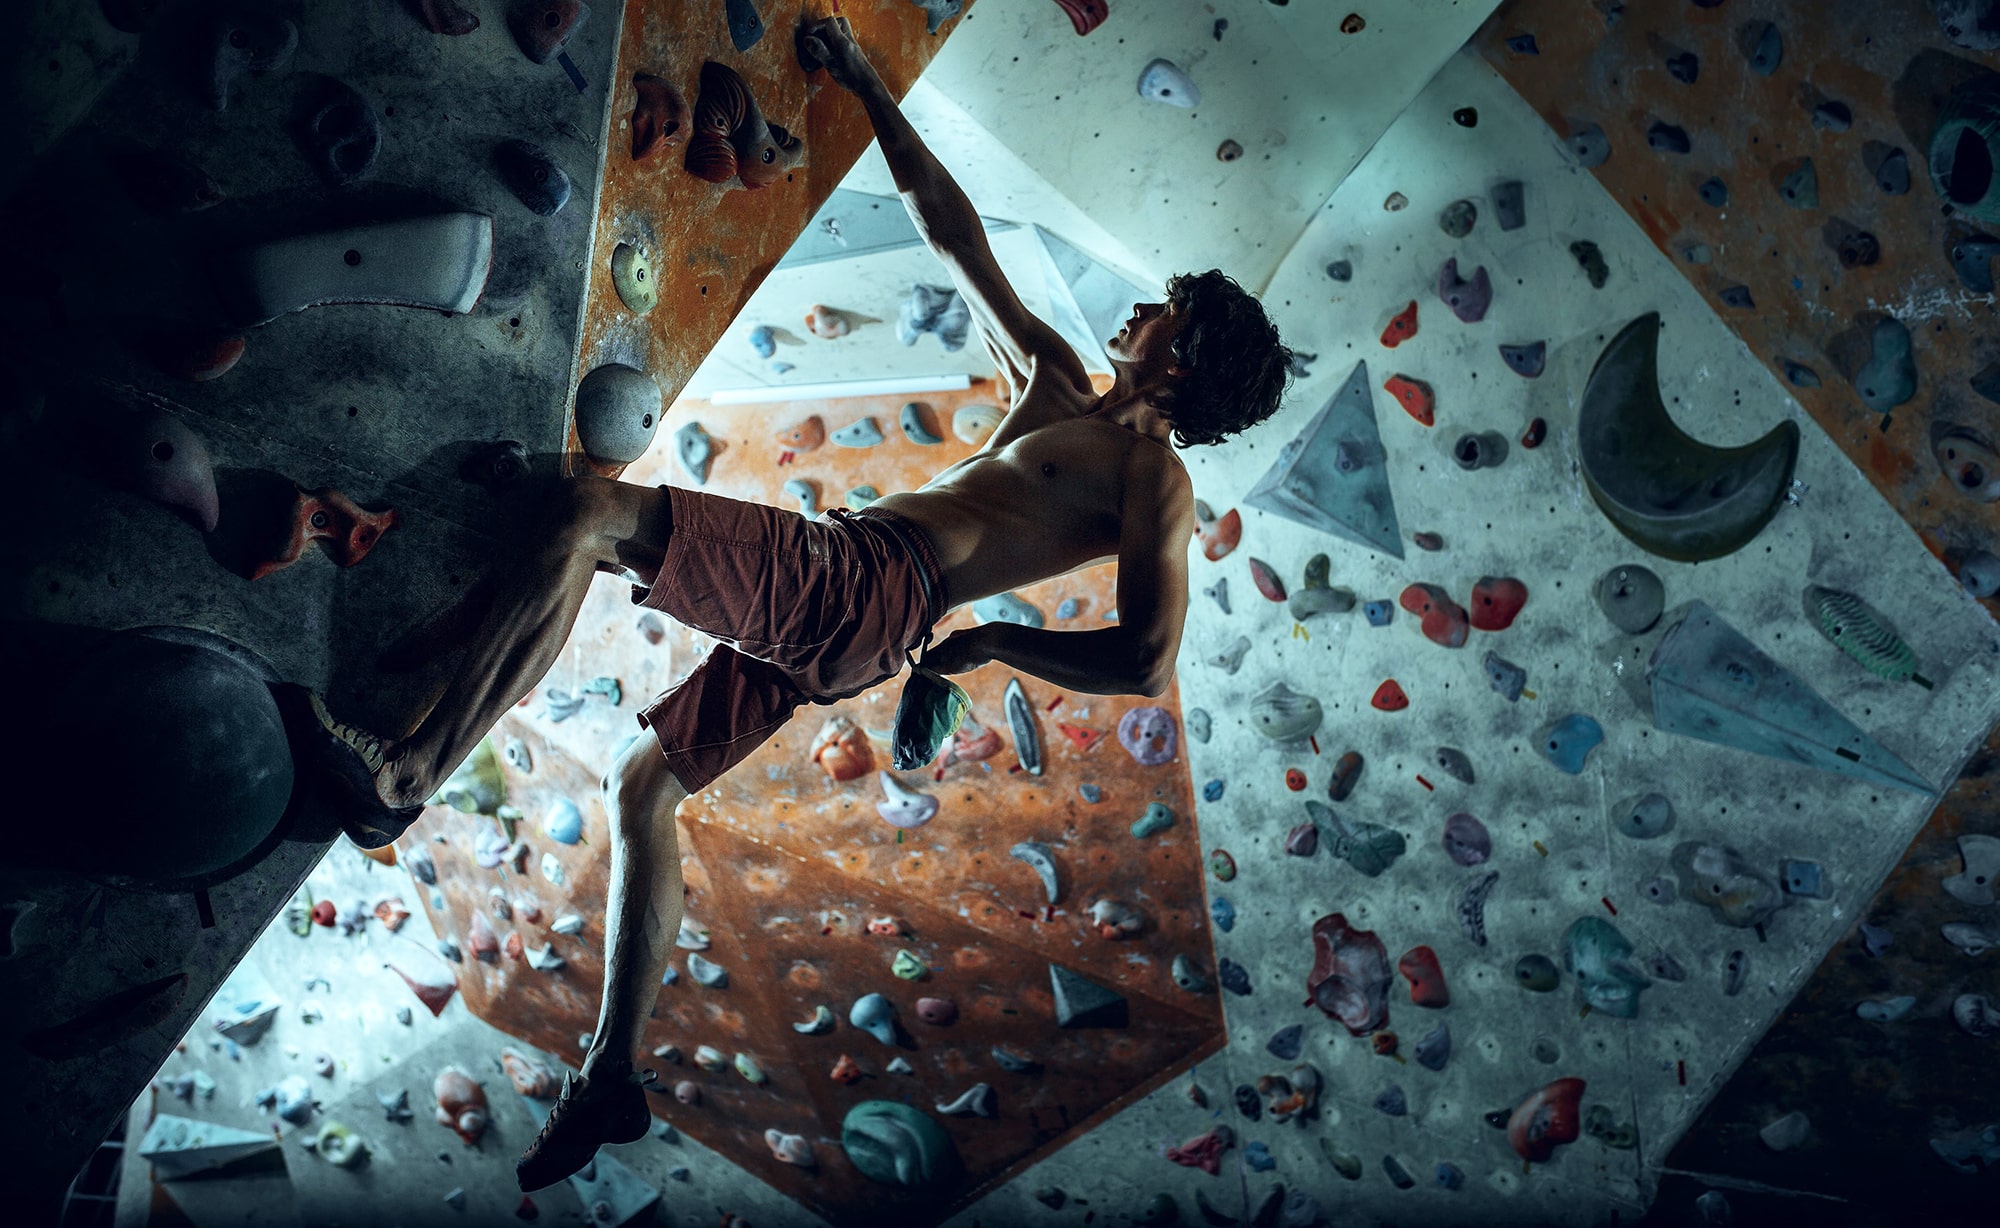 free climber young man climbing artificial boulder indoors min min